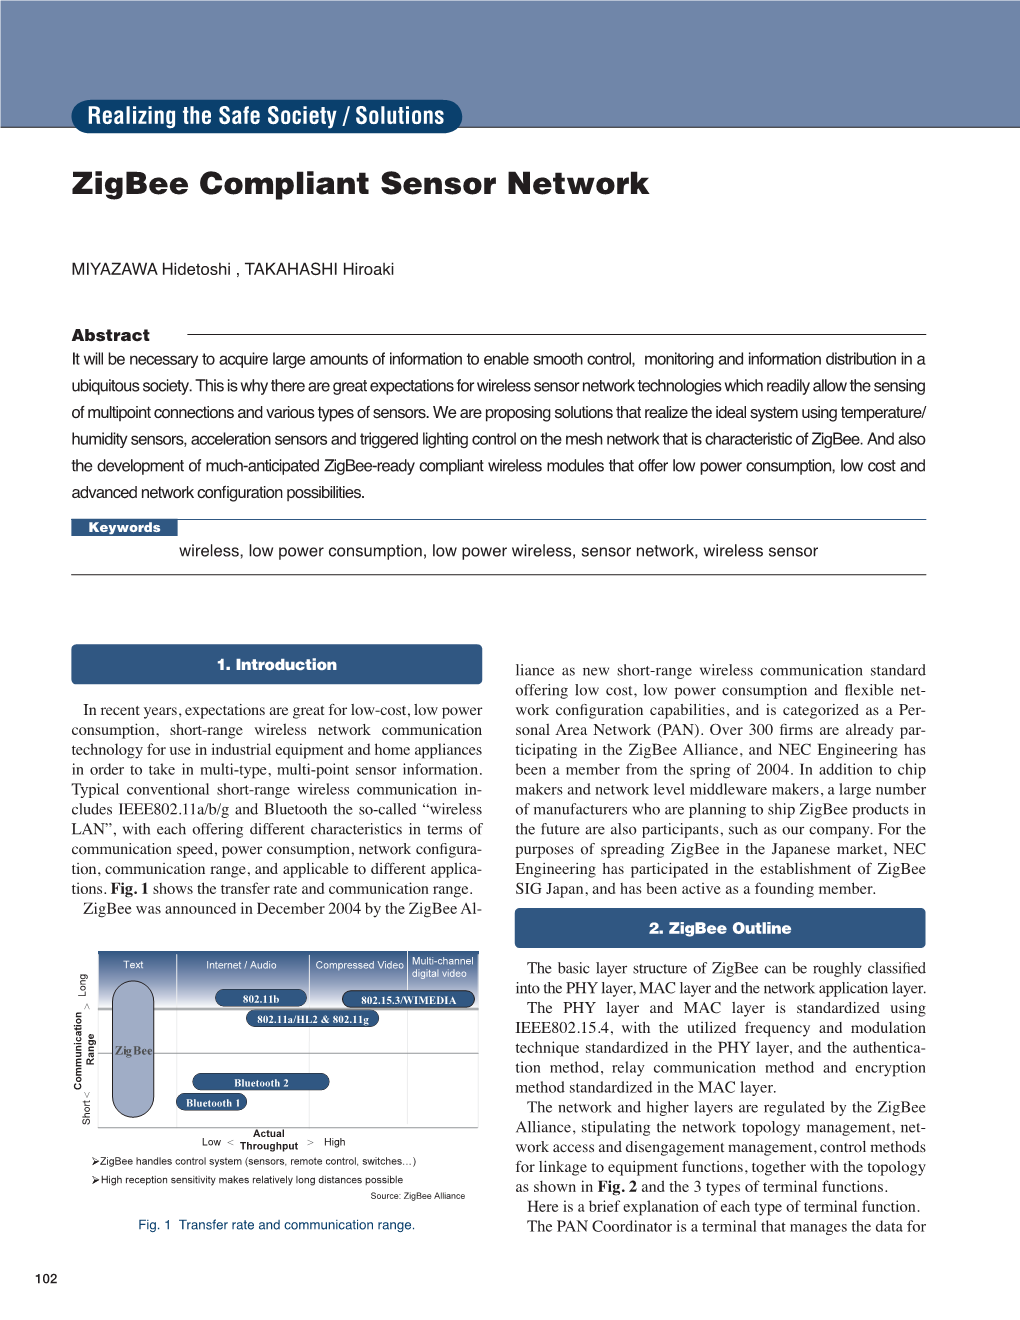 Zigbee Compliant Sensor Network